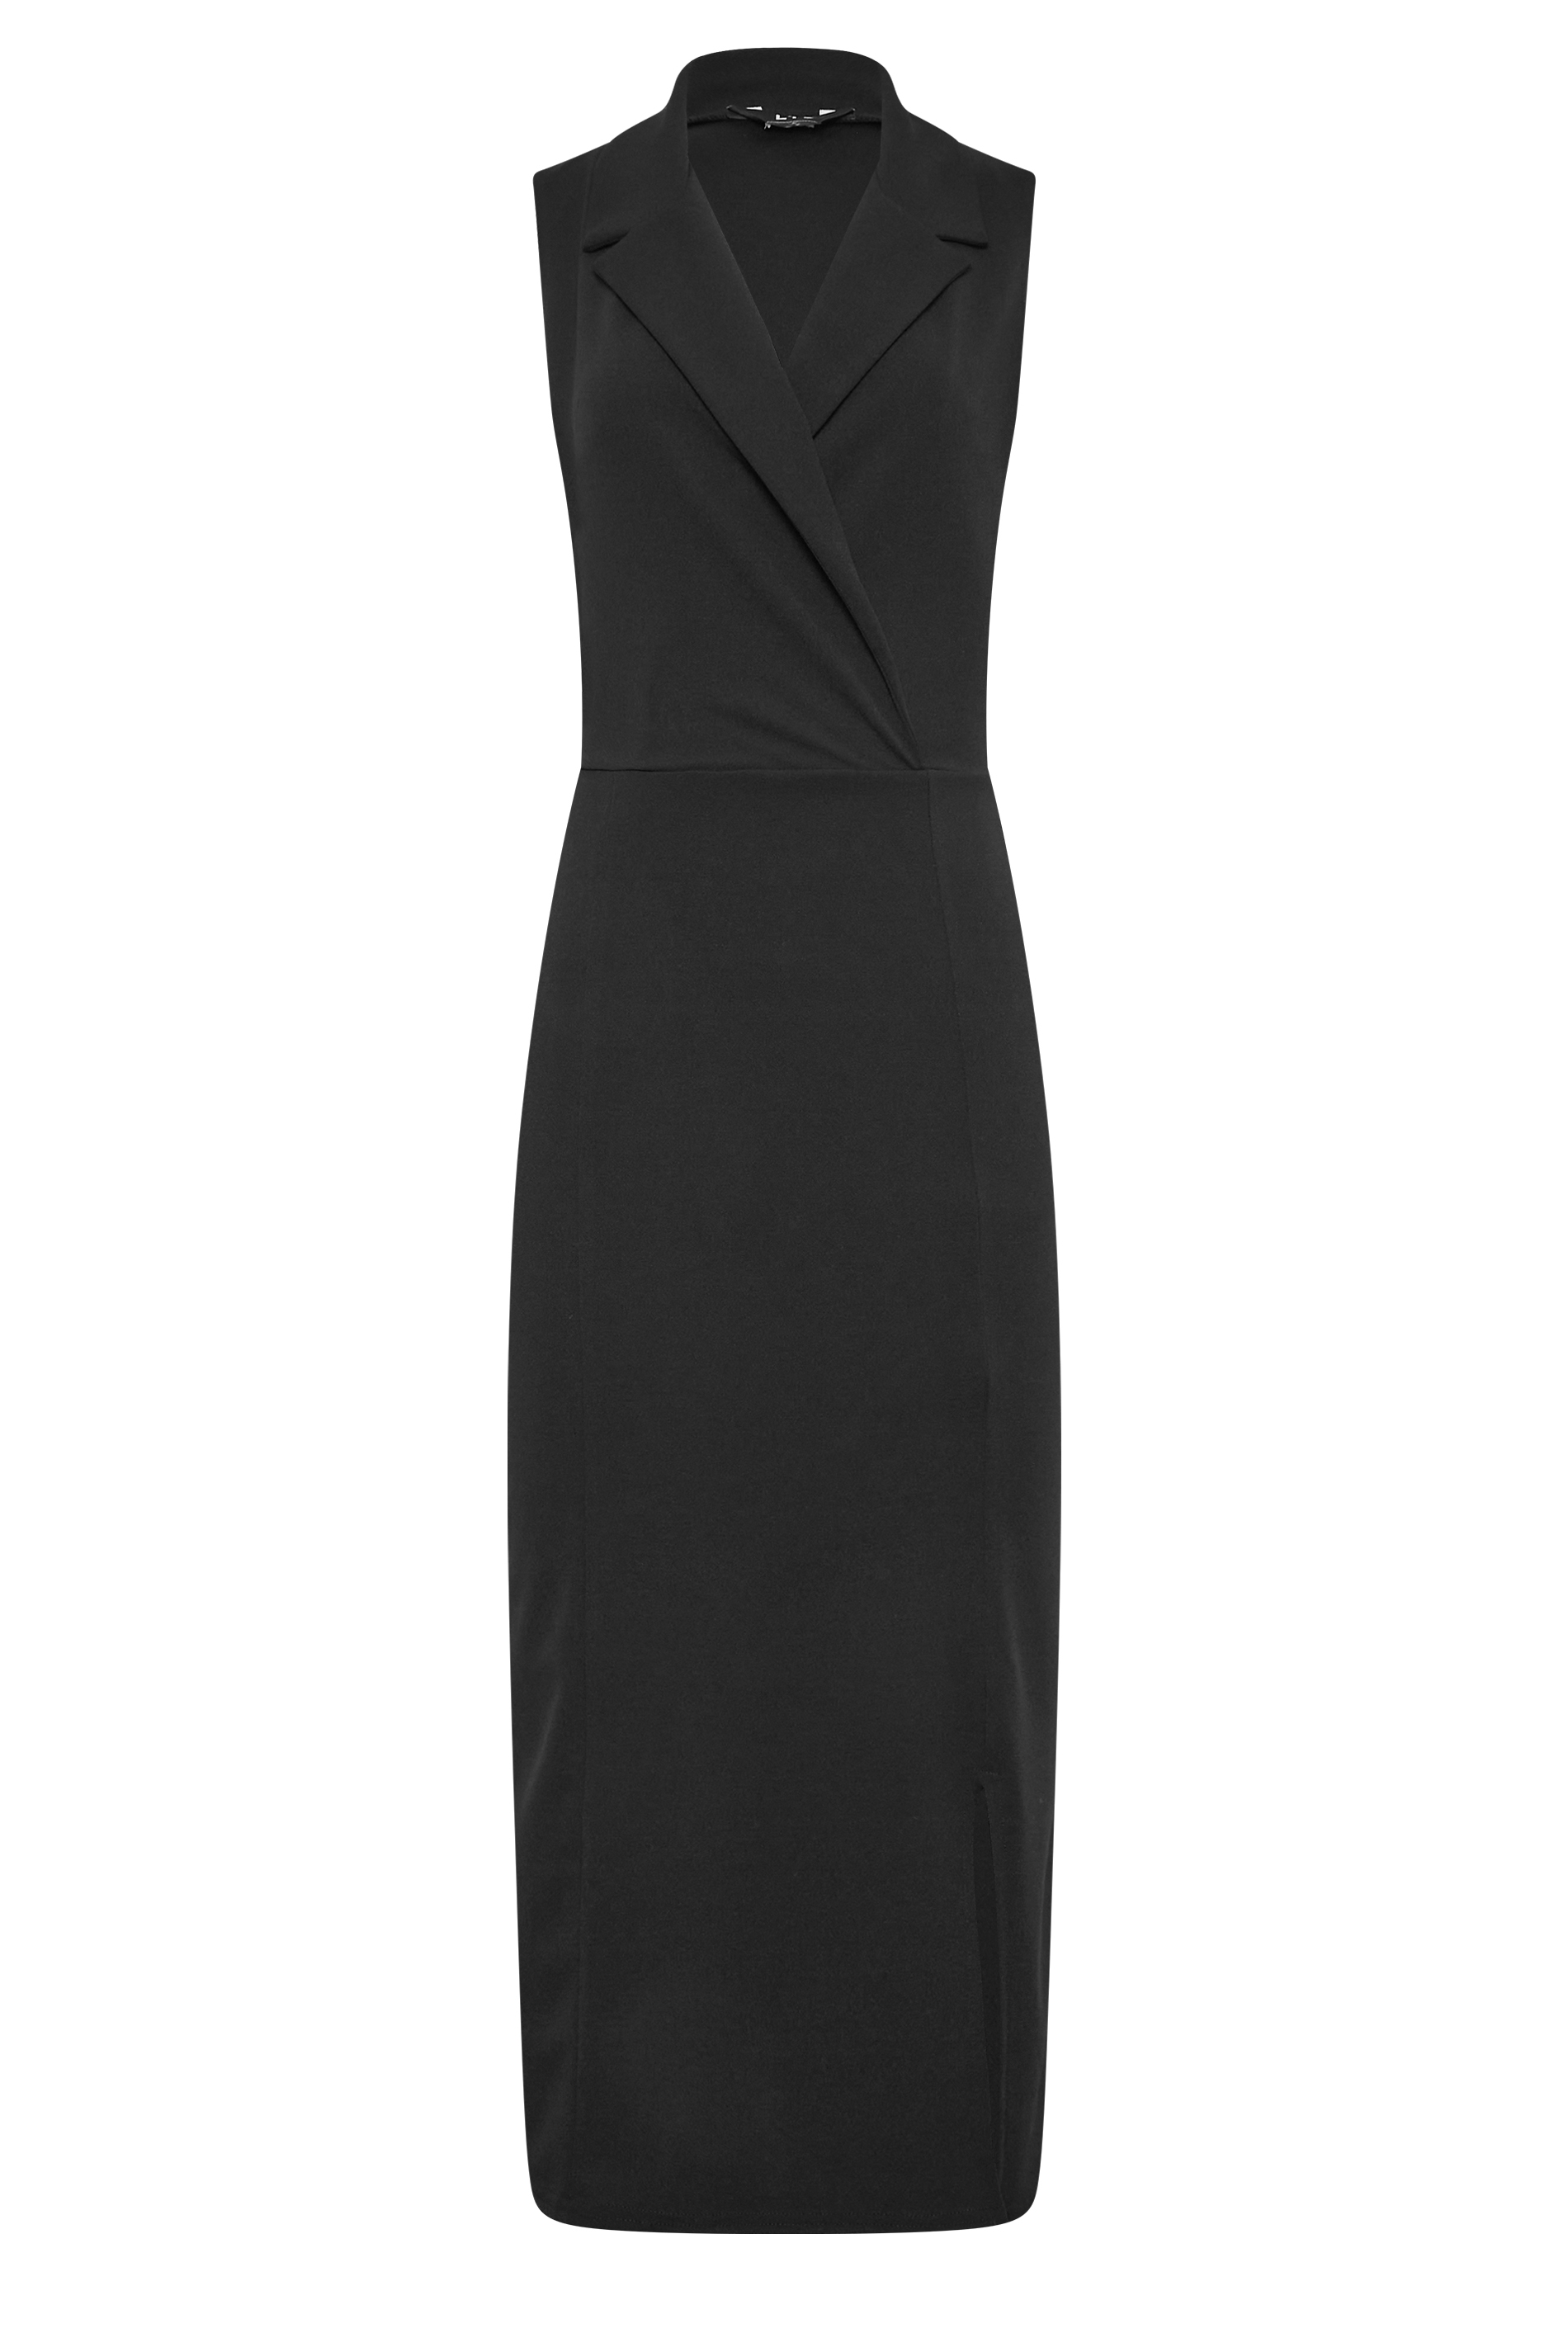 LTS Tall Women's Black Scuba Blazer Dress | Long Tall Sally 3